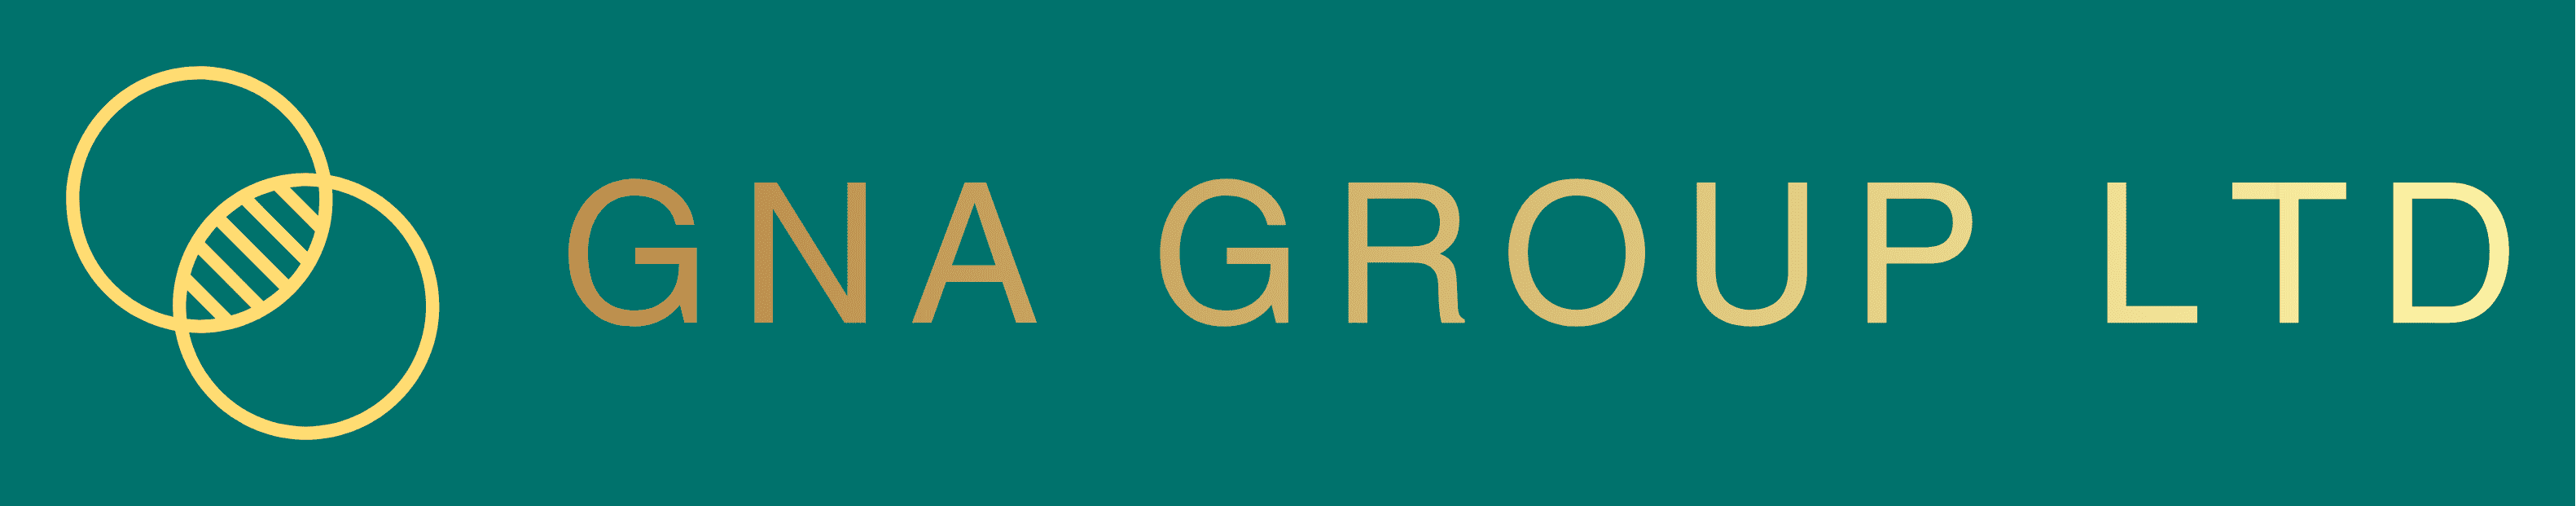 gna group logo